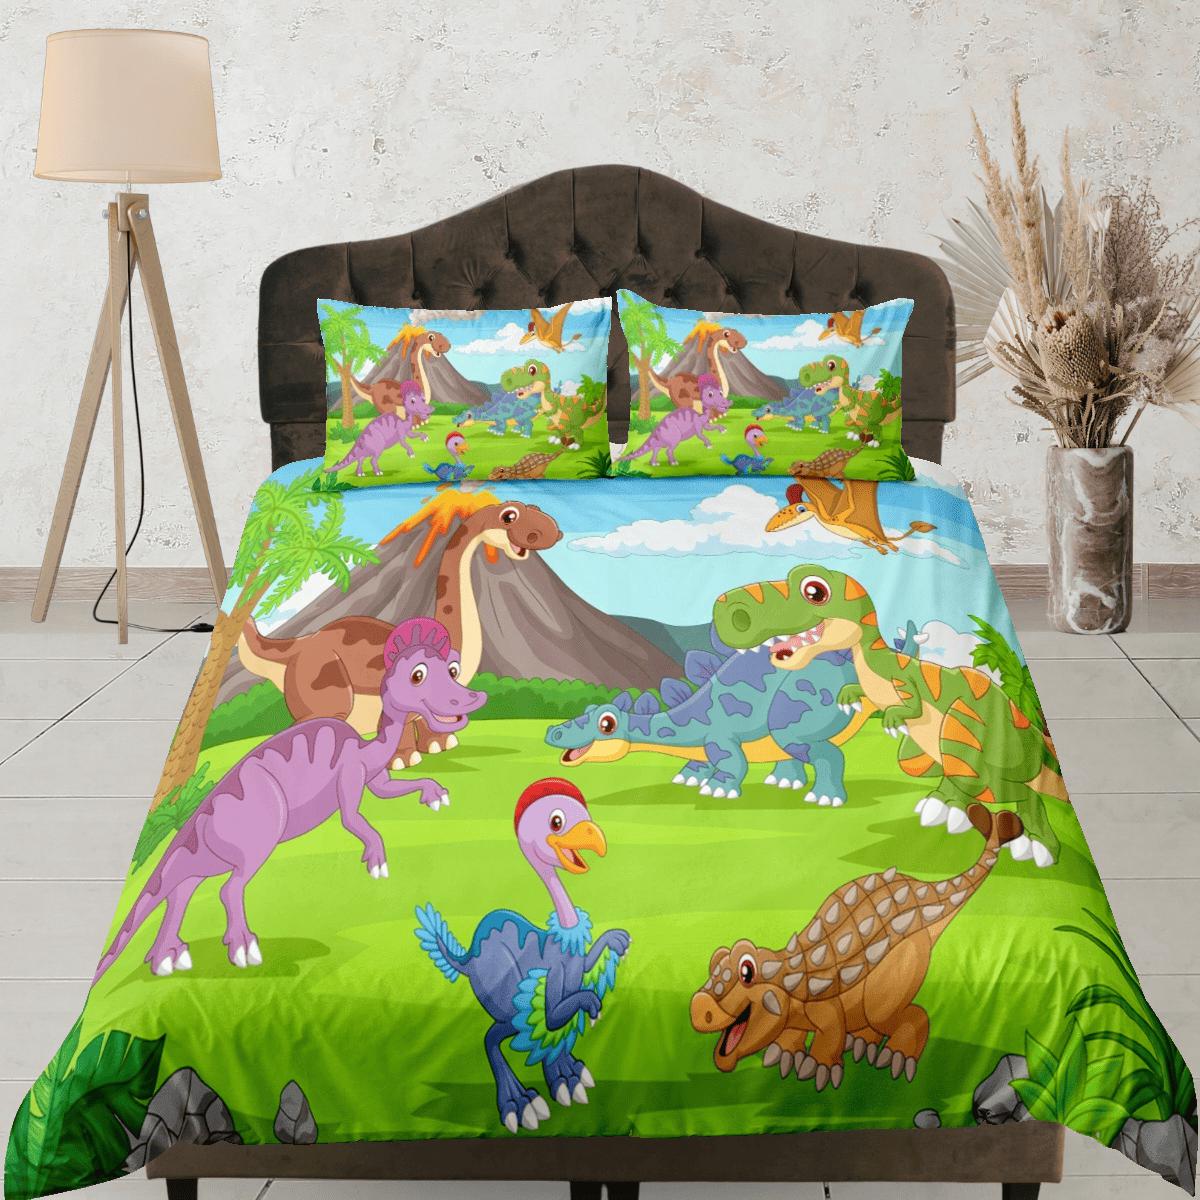 daintyduvet Volcano dinosaur bedding, kids bedding full, cute duvet cover set, dinosaur nursery bed decor, colorful bedding, baby dinosaur, toddler